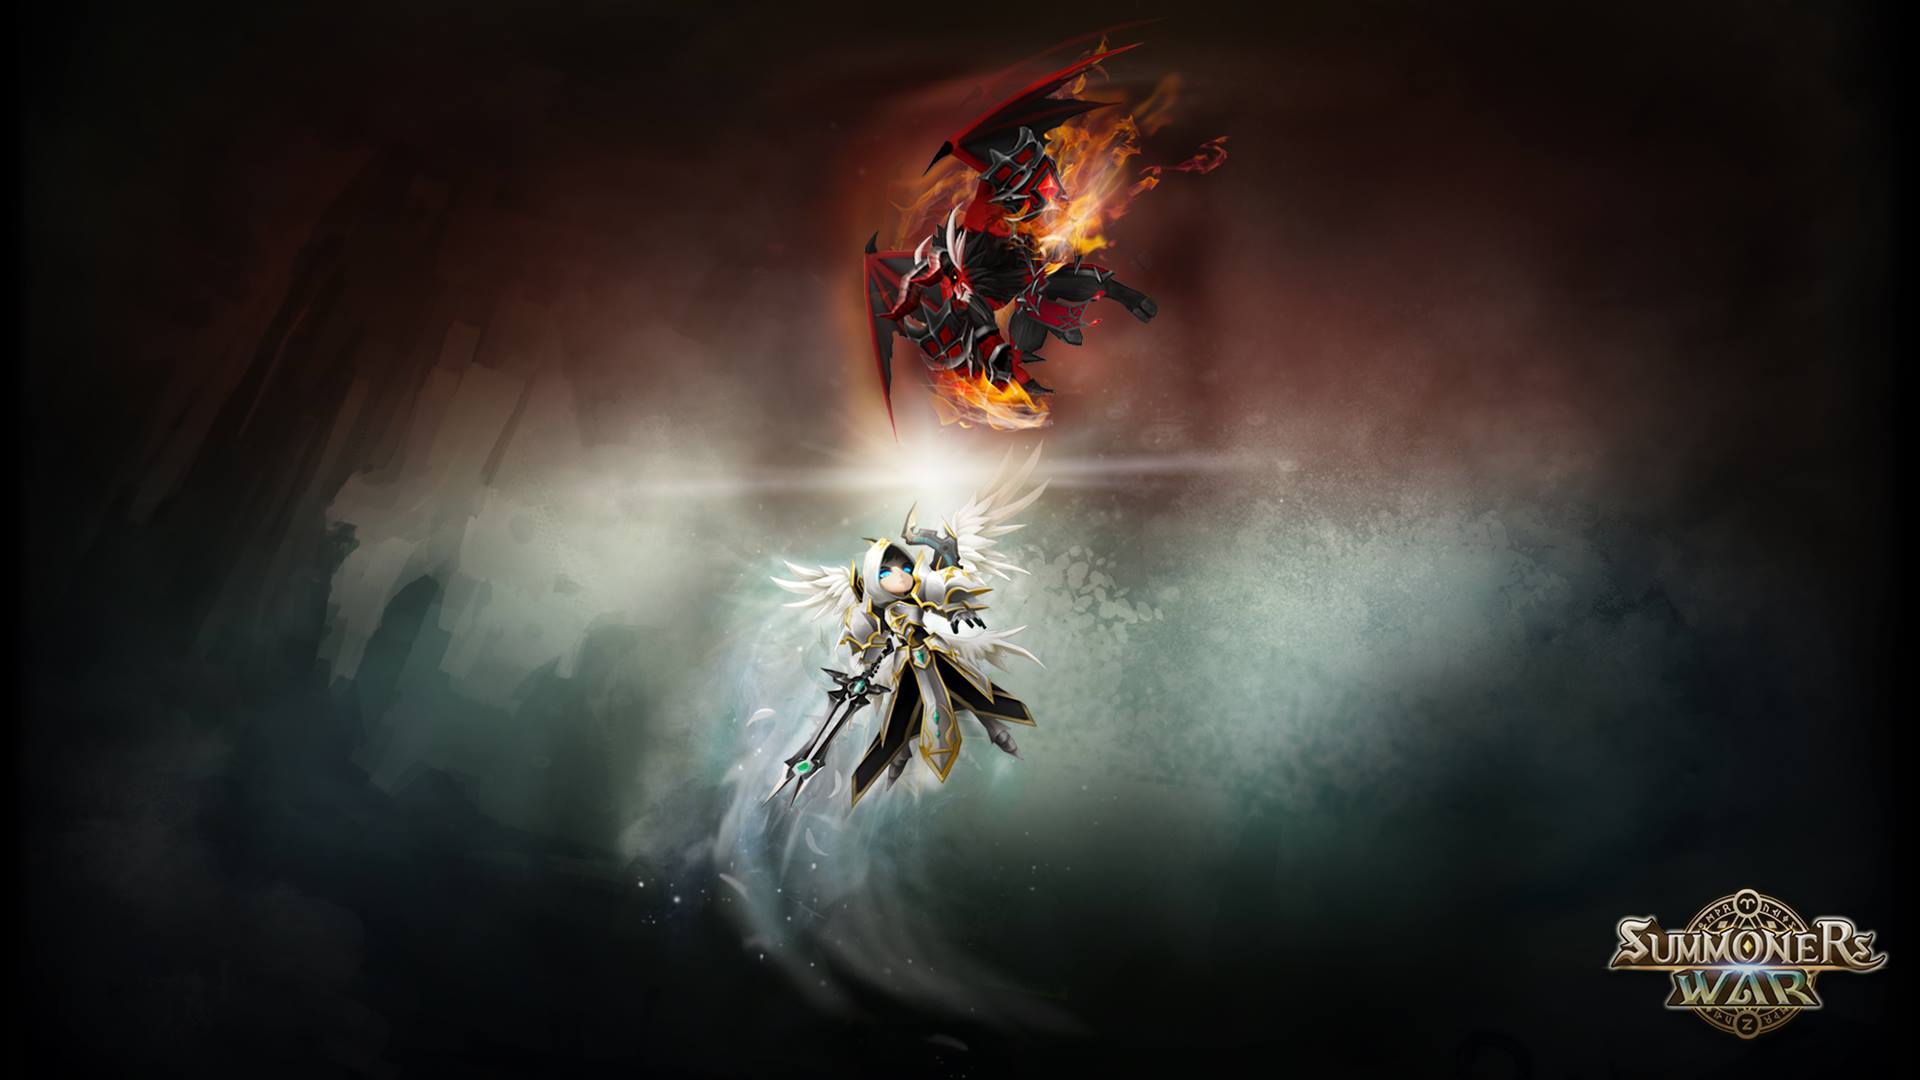 summoners war sky arena hd wallpaper background image on summoners war wallpapers